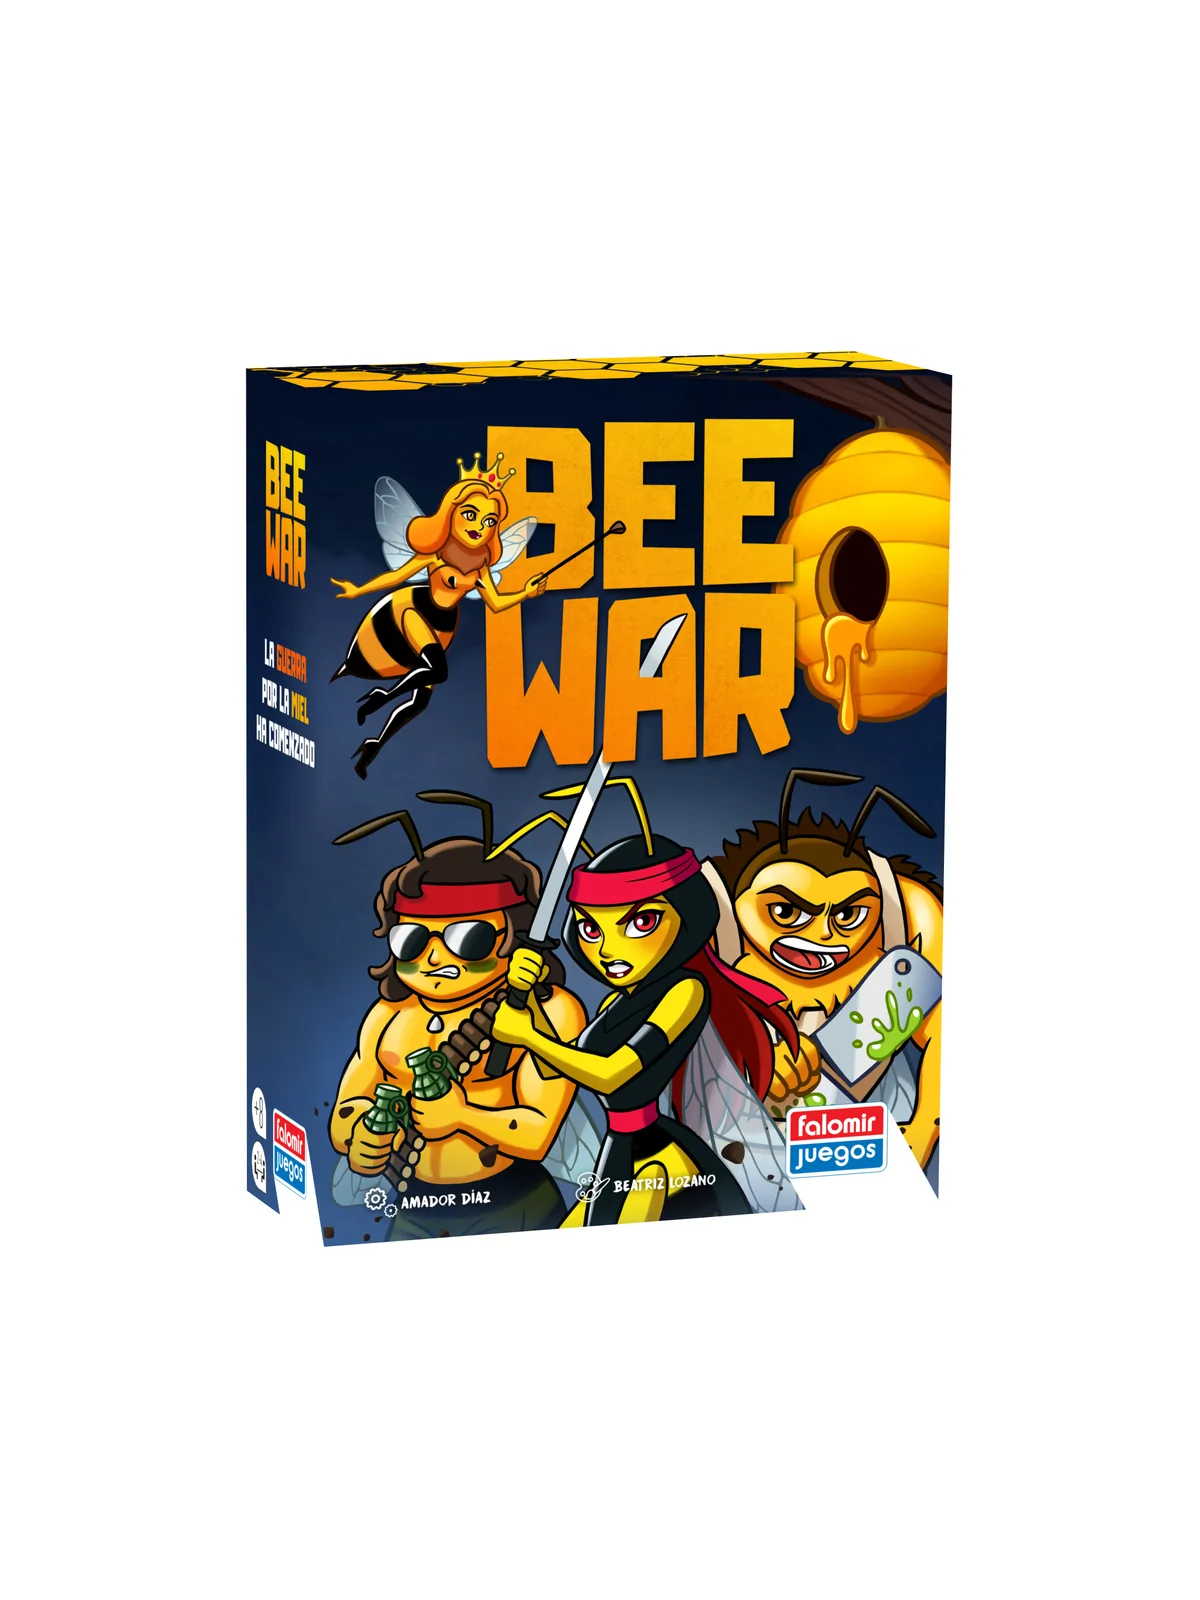 Comprar Bee War barato al mejor precio 17,95 € de Falomir Juegos